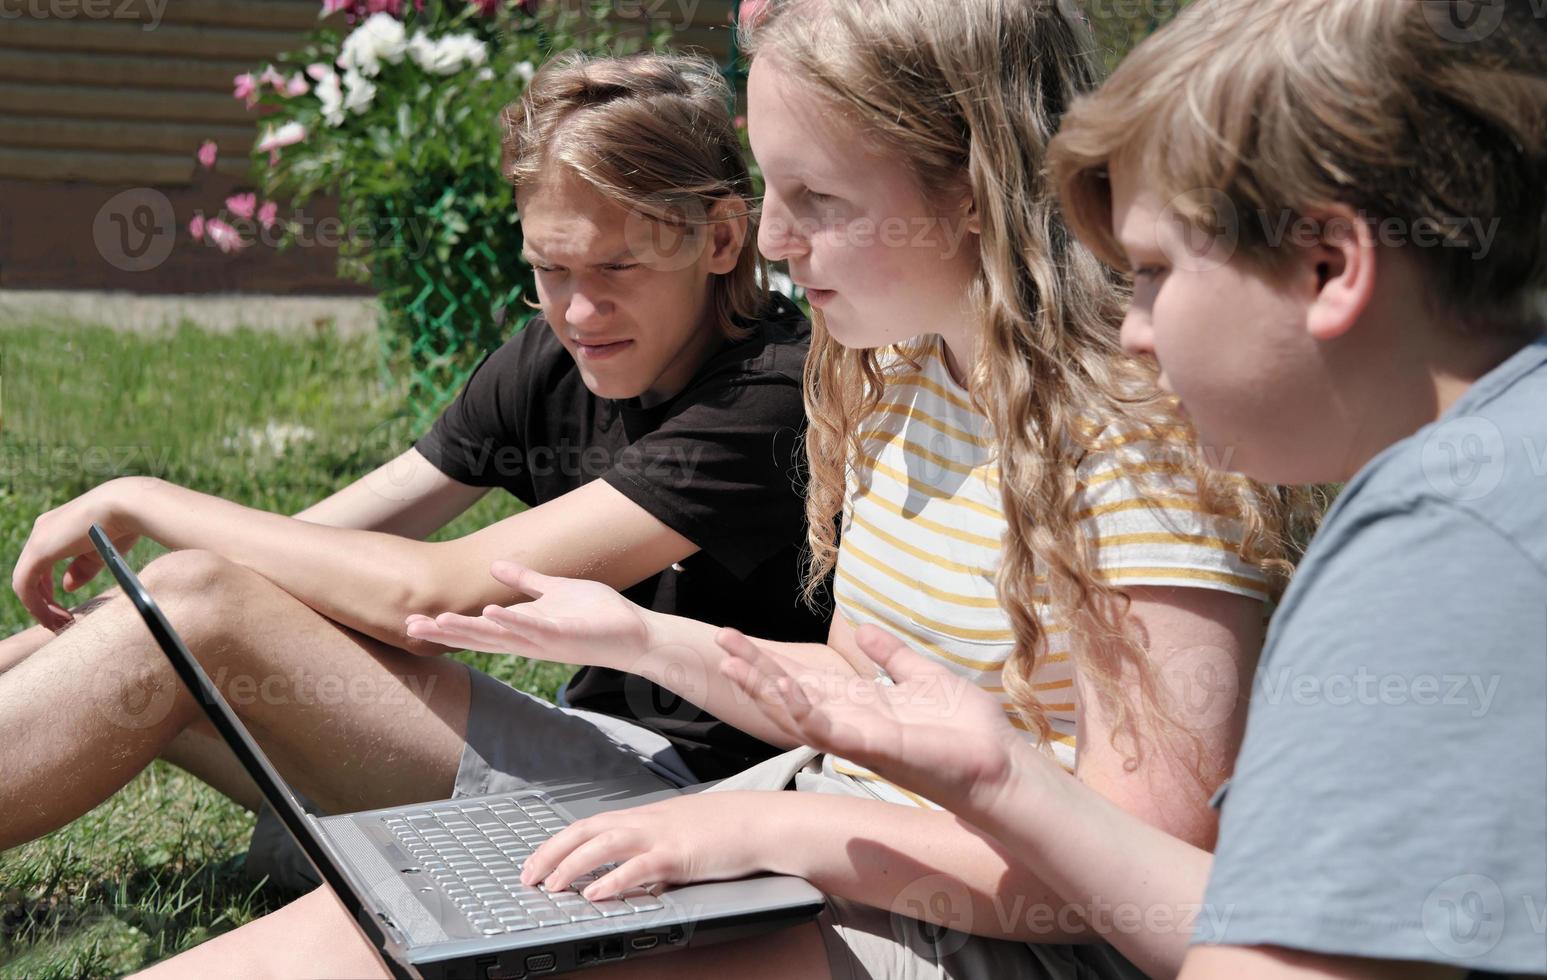 Zwei Teenager und ein Mädchen sitzen auf einer Wiese und unterhalten sich per Laptop per Video. kommunikations- und zusammengehörigkeitskonzept. emotionale Teenager foto